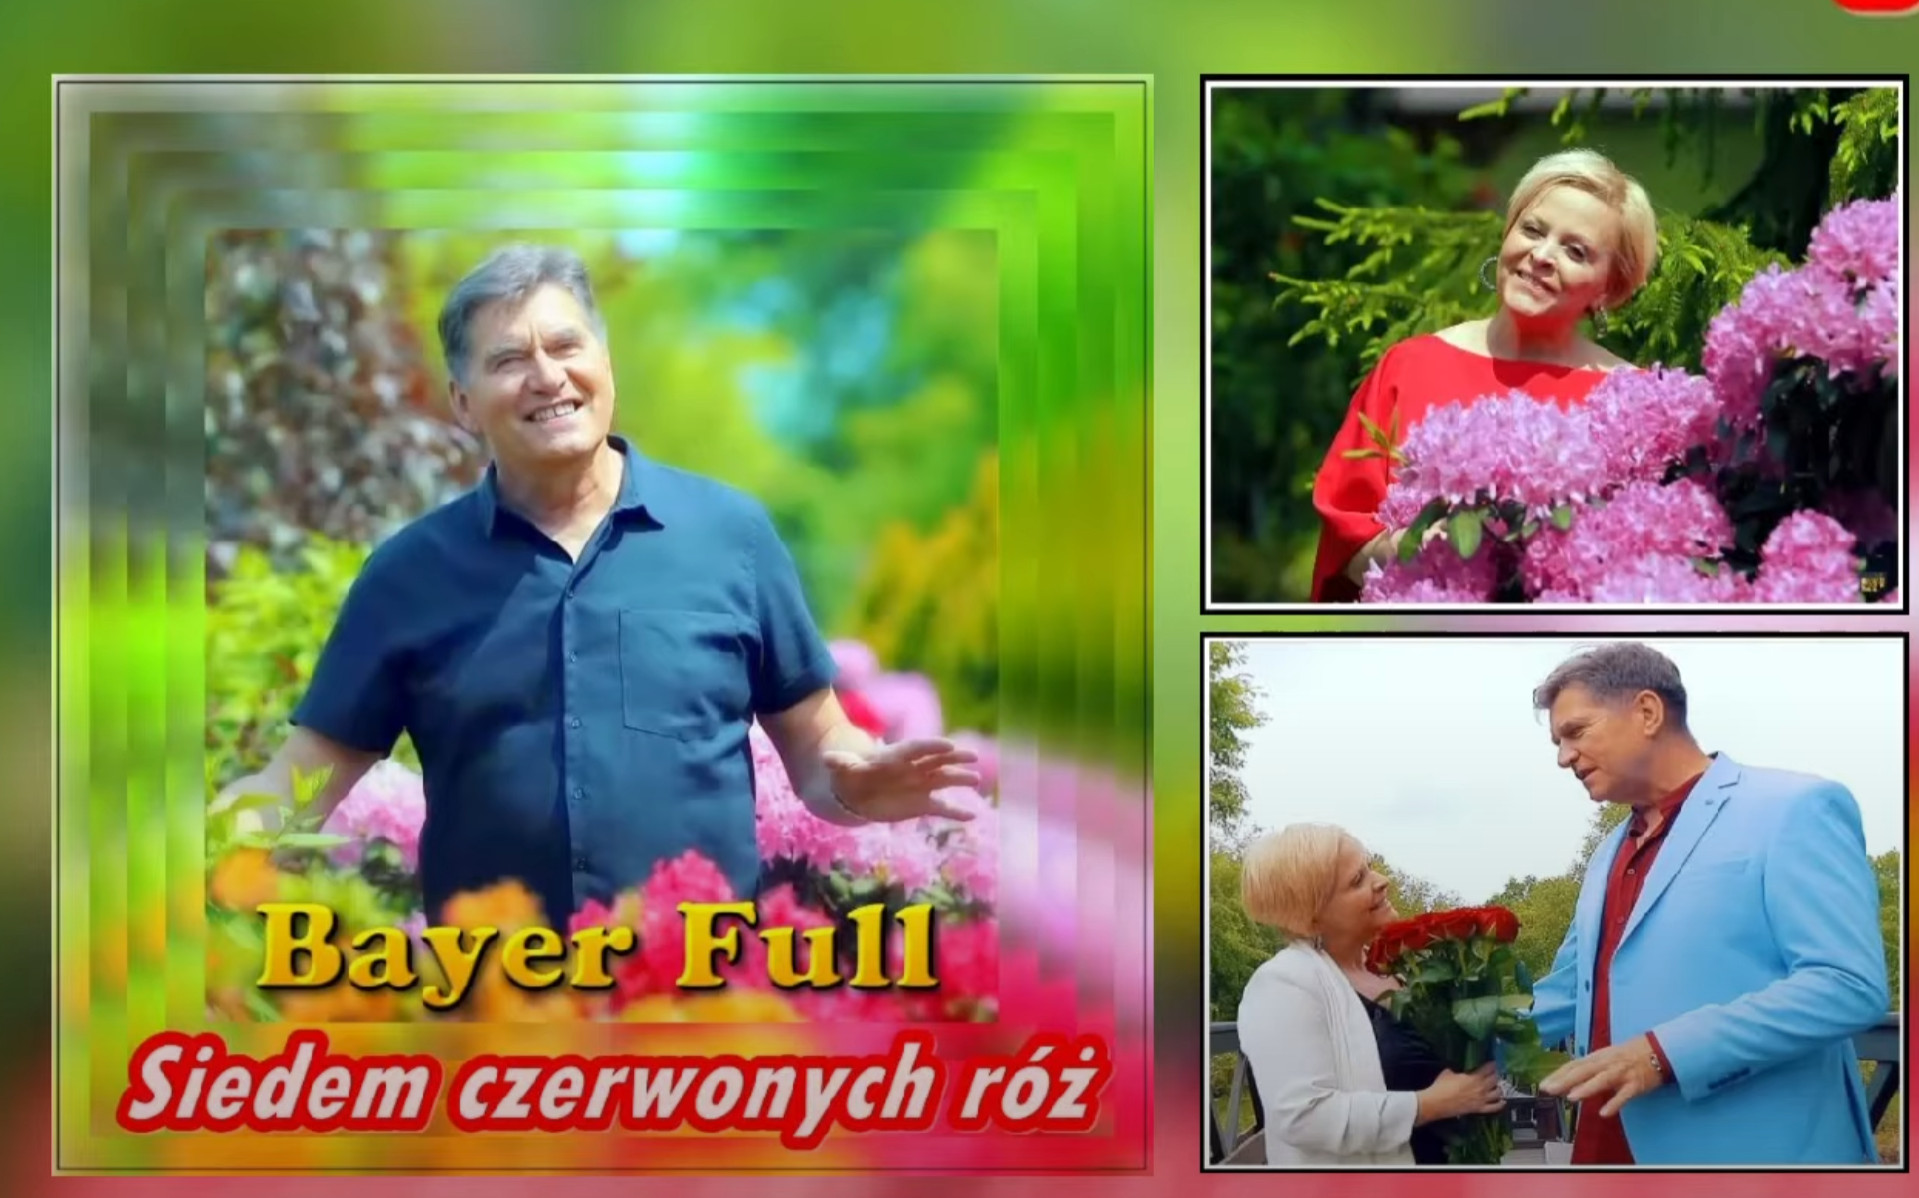 Bayer Full z premierą „Siedem Czerwonych Róż” – Biesiadny Hit na YouTube!